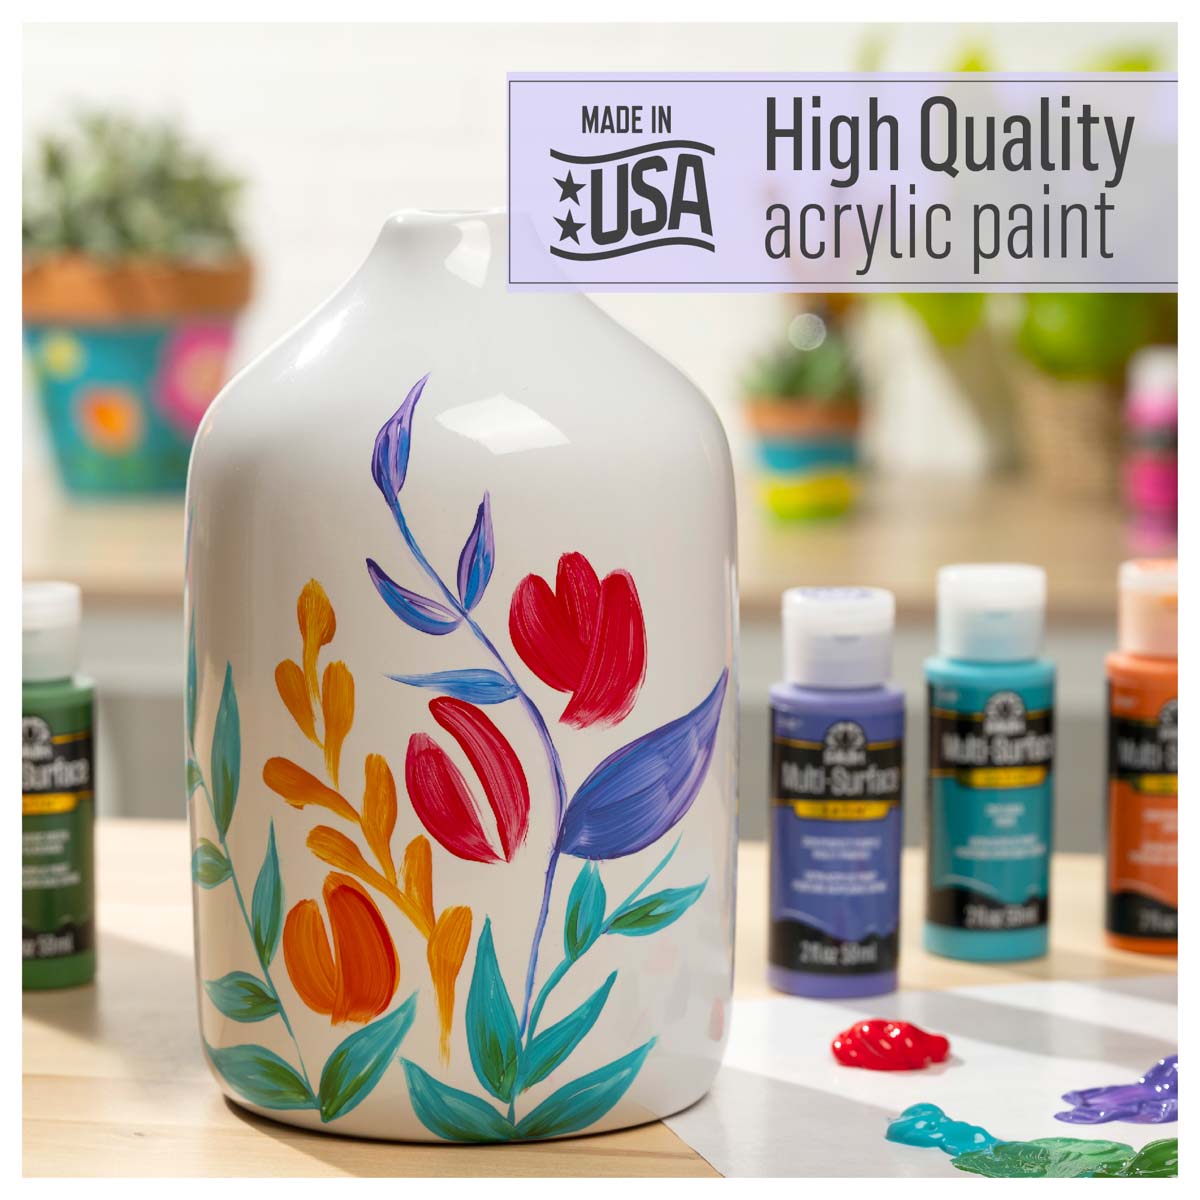 Shop Plaid FolkArt ® Multi-Surface Satin Acrylic Paint 12 Color